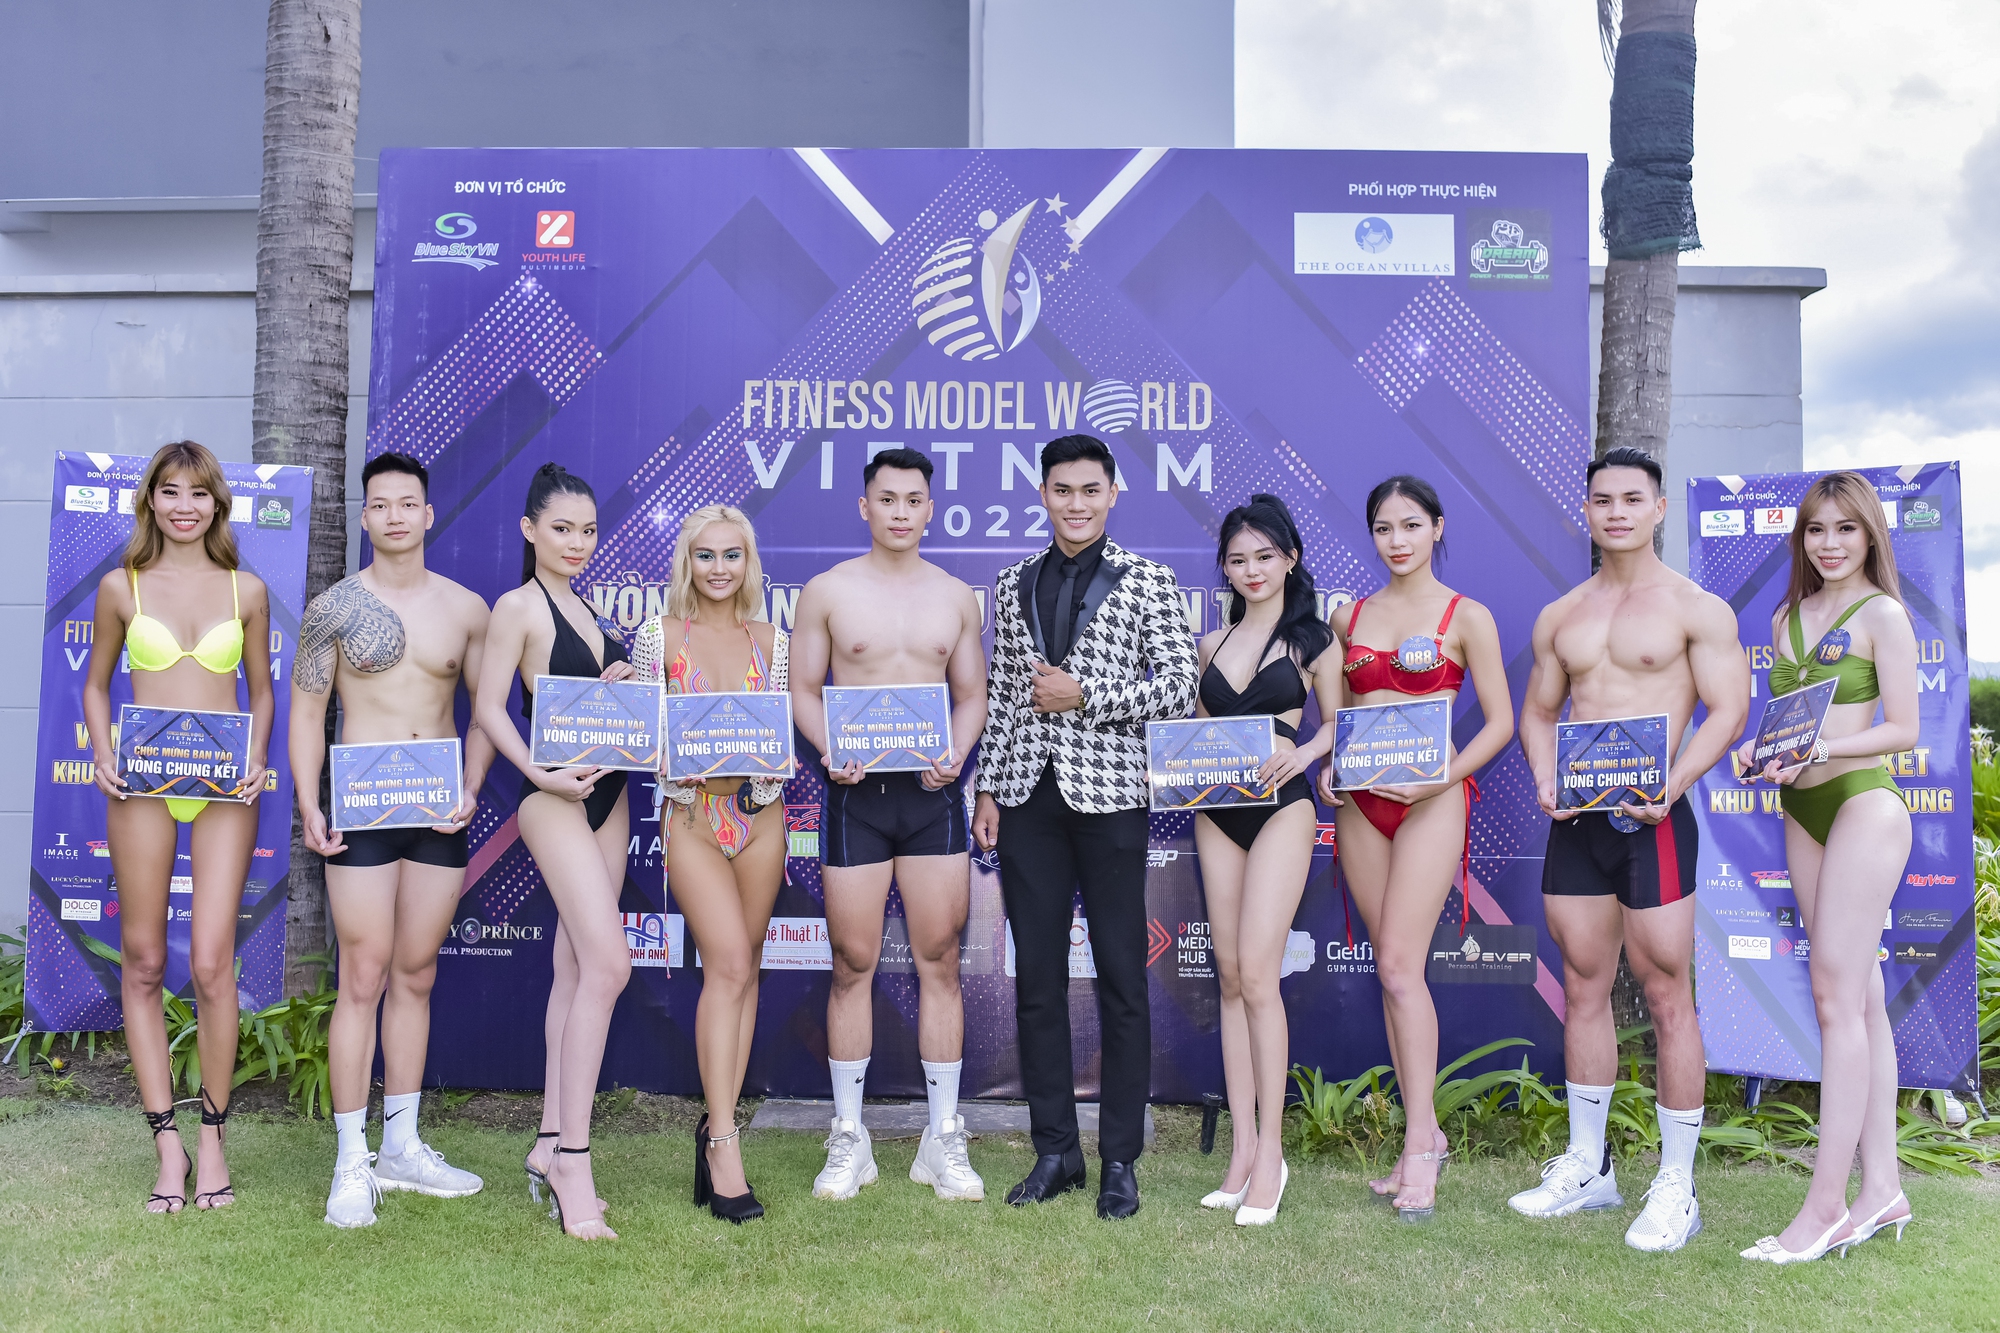 Dàn nam vương, hoa hậu tuyển chọn 45 thí sinh xuất sắc nhất Fitness Model World Vietnam 2022 - Ảnh 2.